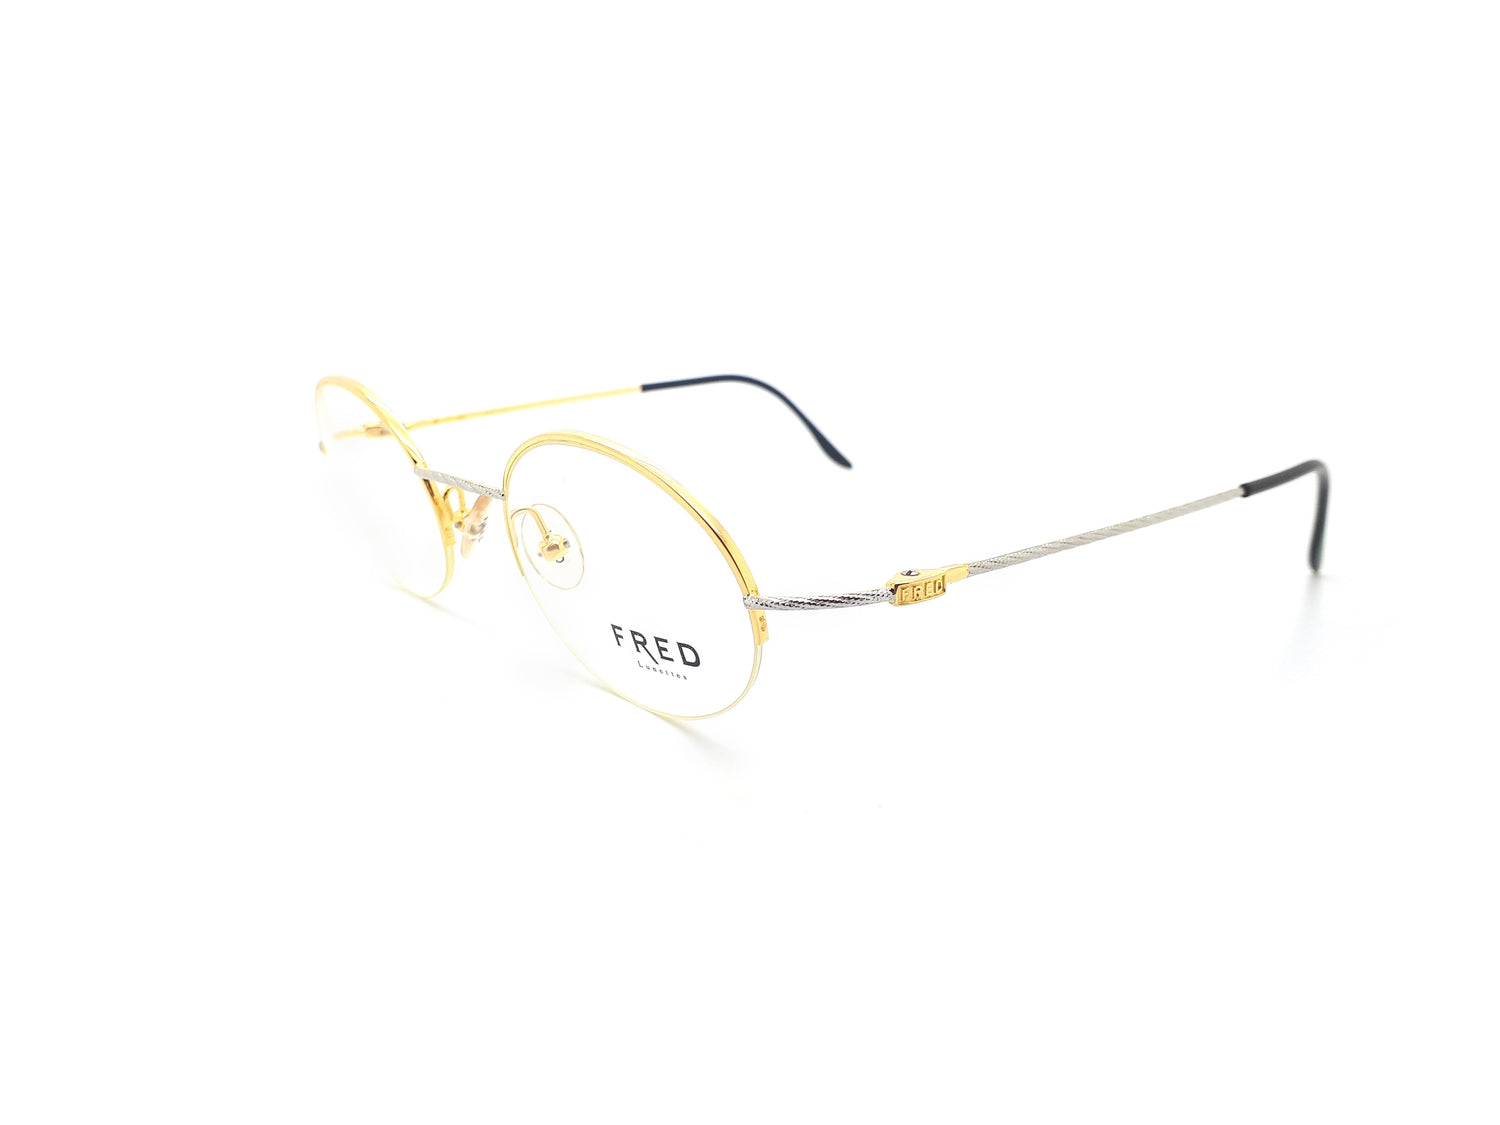 Fred Force 10 F10 L02 Vintage Glasses Frame – Ed & Sarna Vintage Eyewear